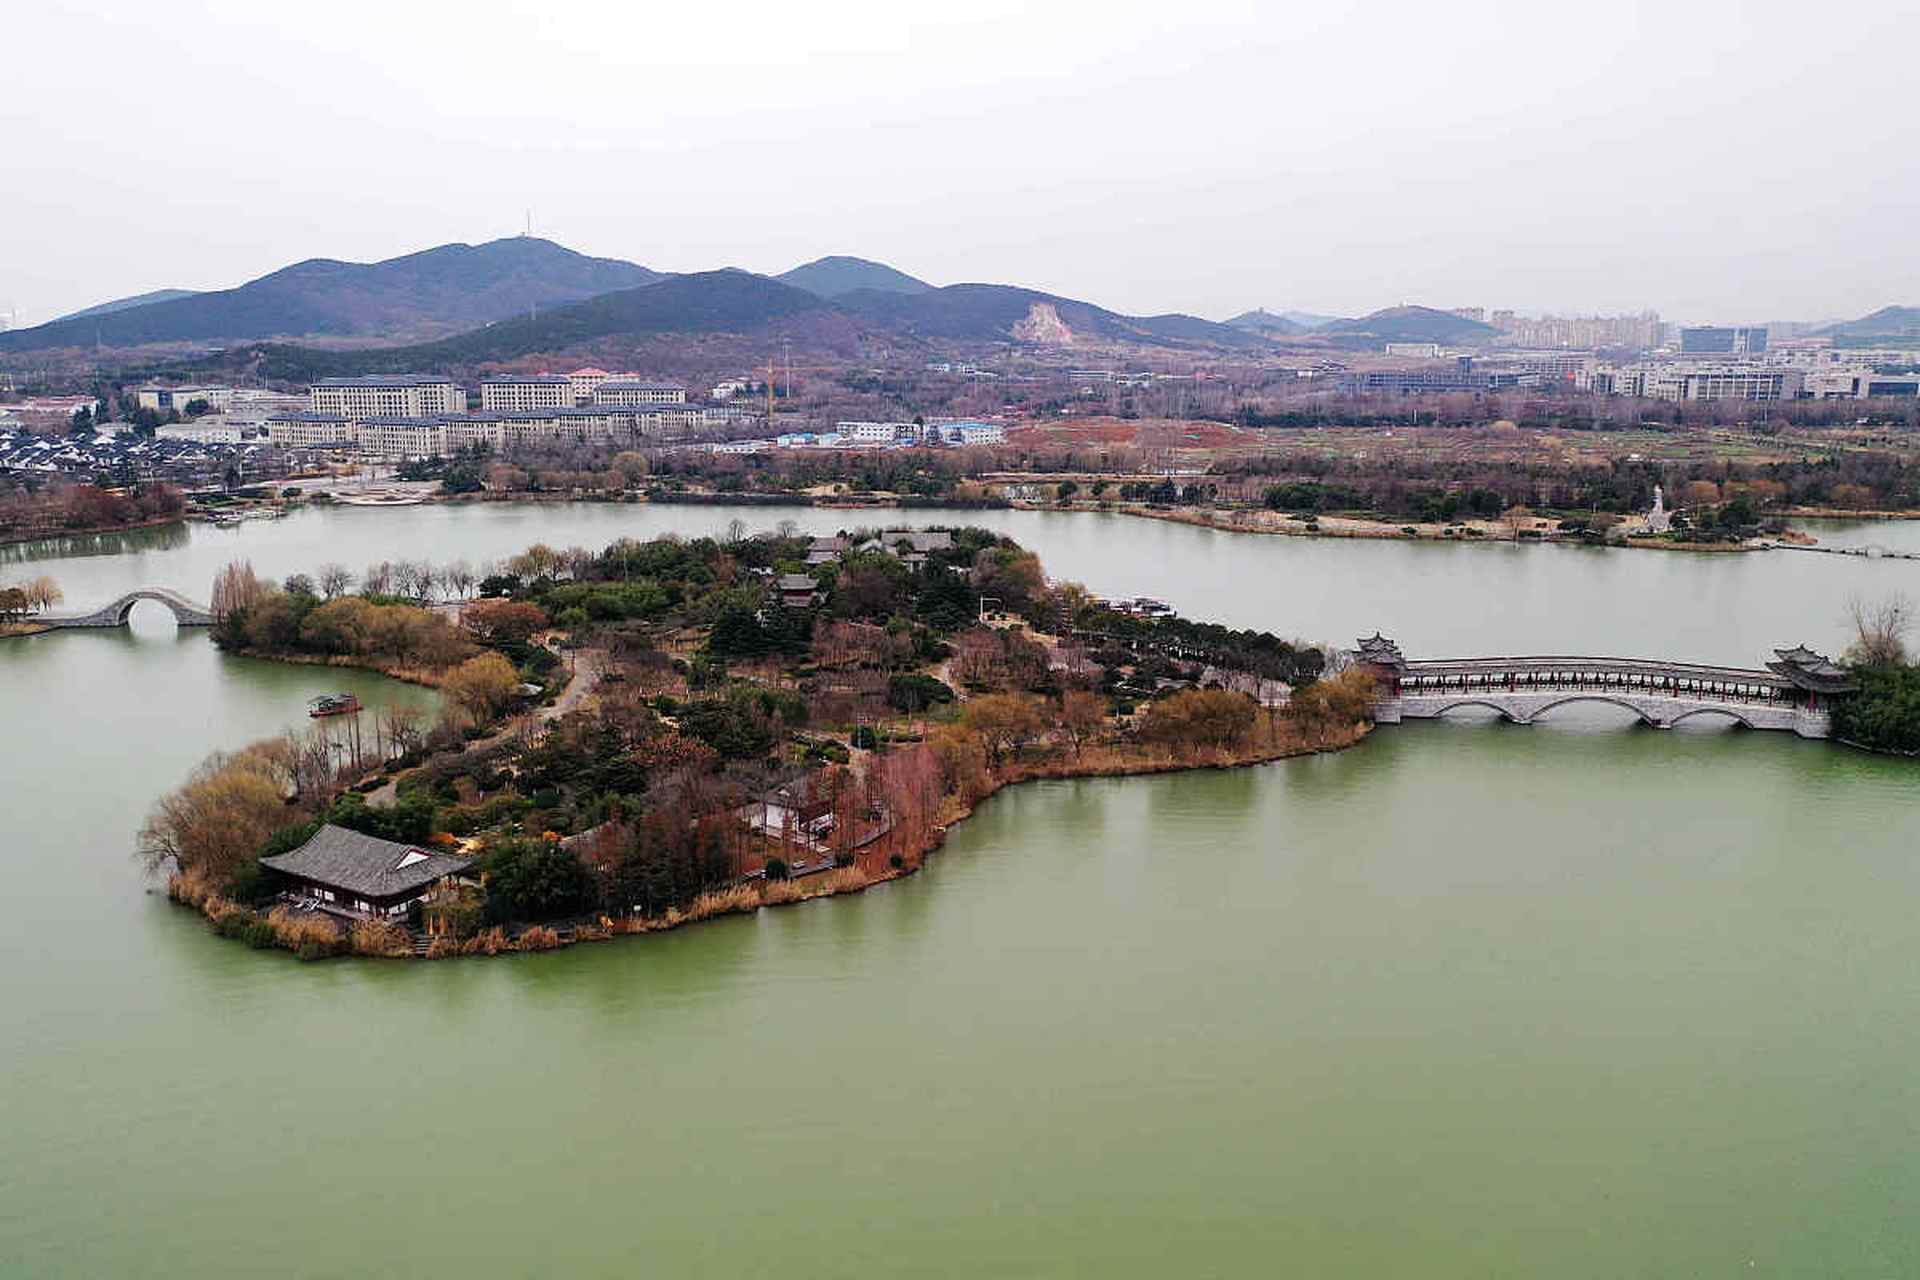 徐州云龙湖风景区  云龙湖风景区位于徐州市区南部,是国家5a级旅游